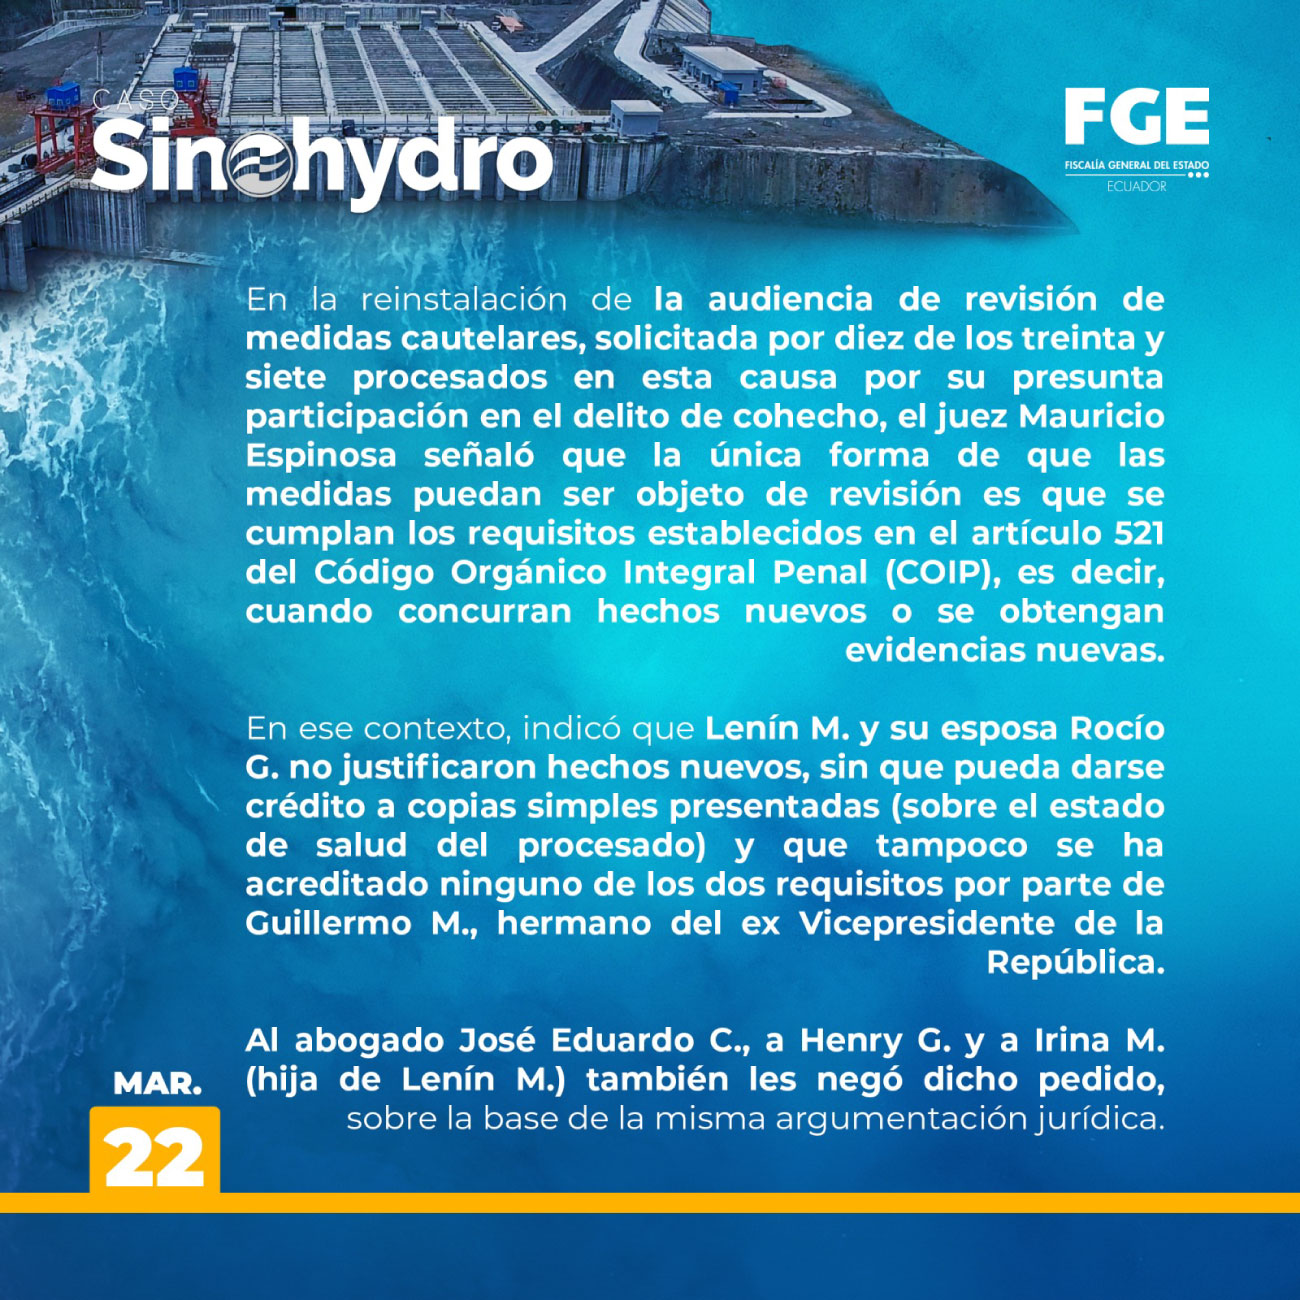 El proceso - Caso Sinohydro